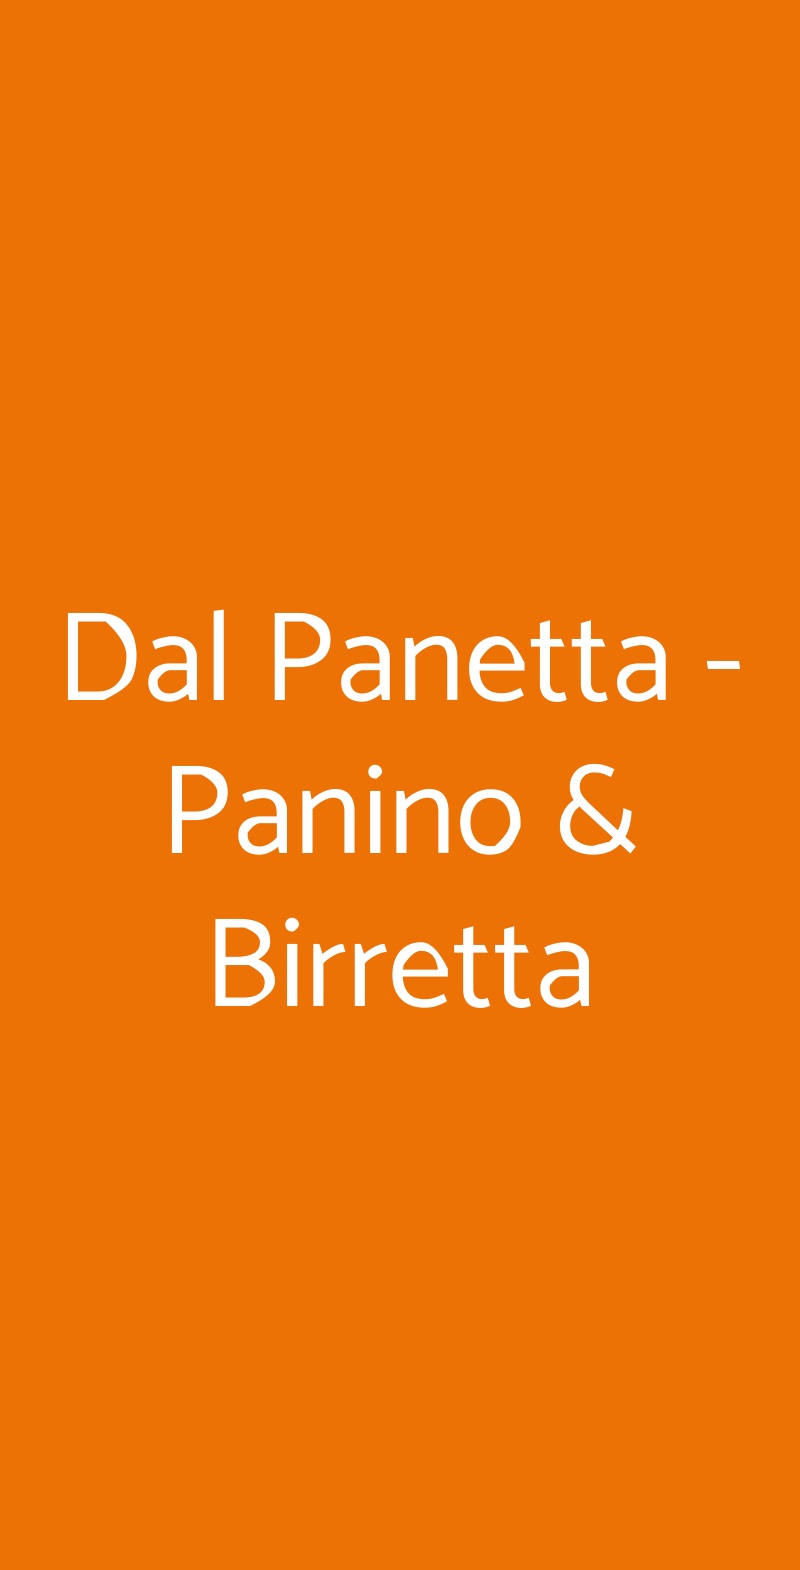 Dal Panetta - Panino & Birretta Lecce menù 1 pagina